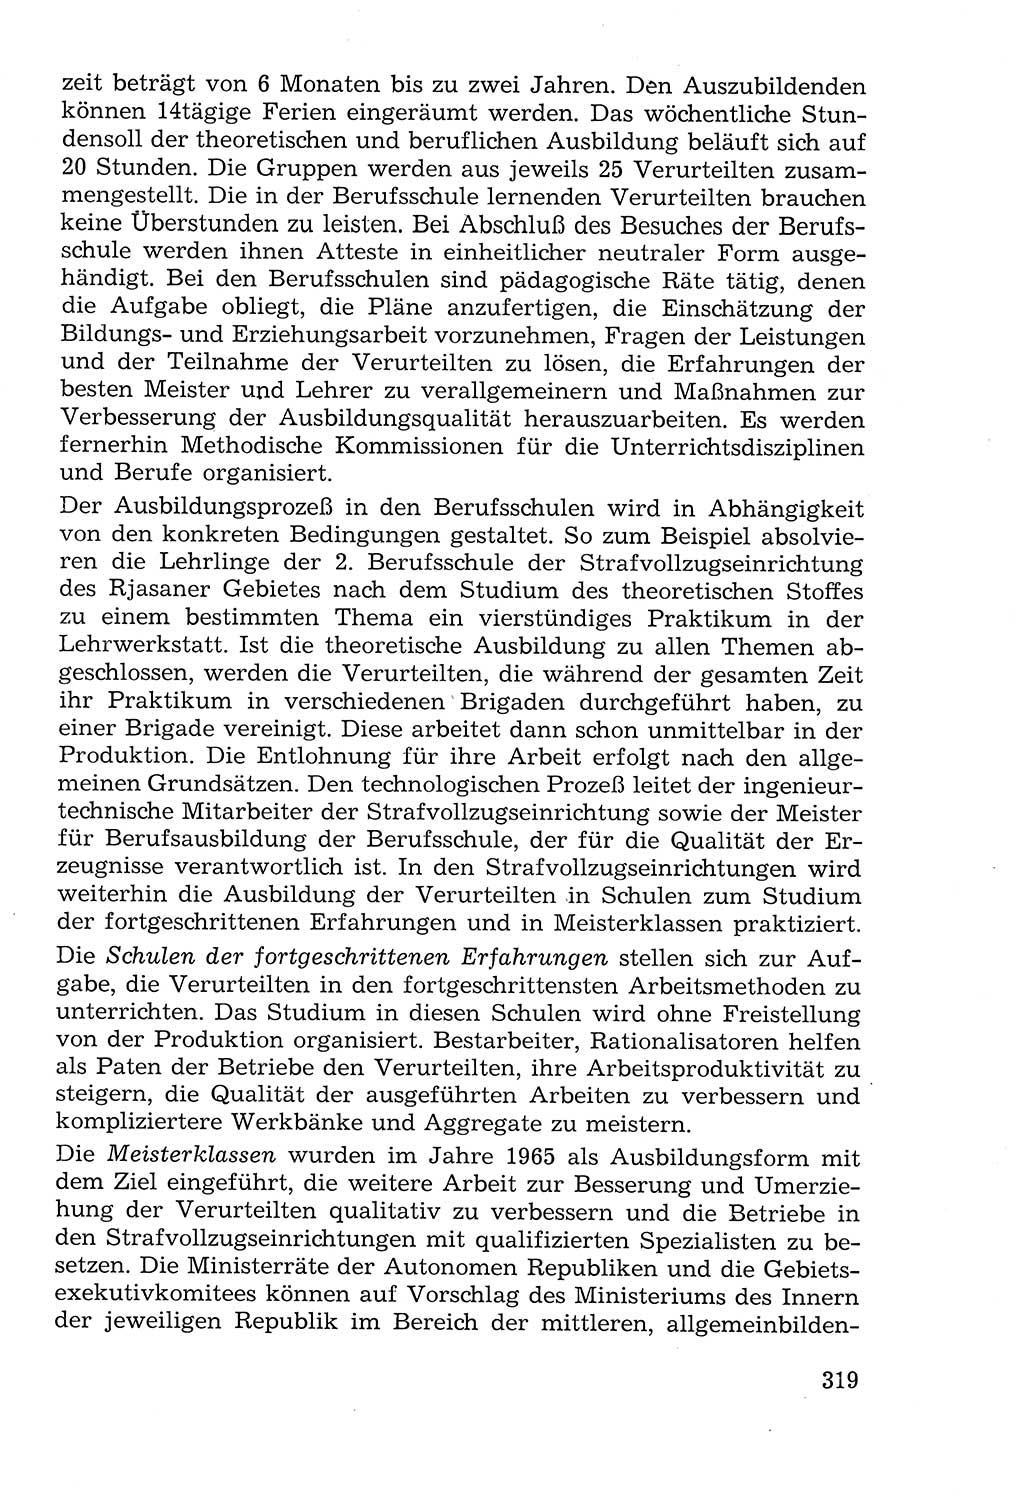 Lehrbuch der Strafvollzugspädagogik [Deutsche Demokratische Republik (DDR)] 1969, Seite 319 (Lb. SV-Pd. DDR 1969, S. 319)